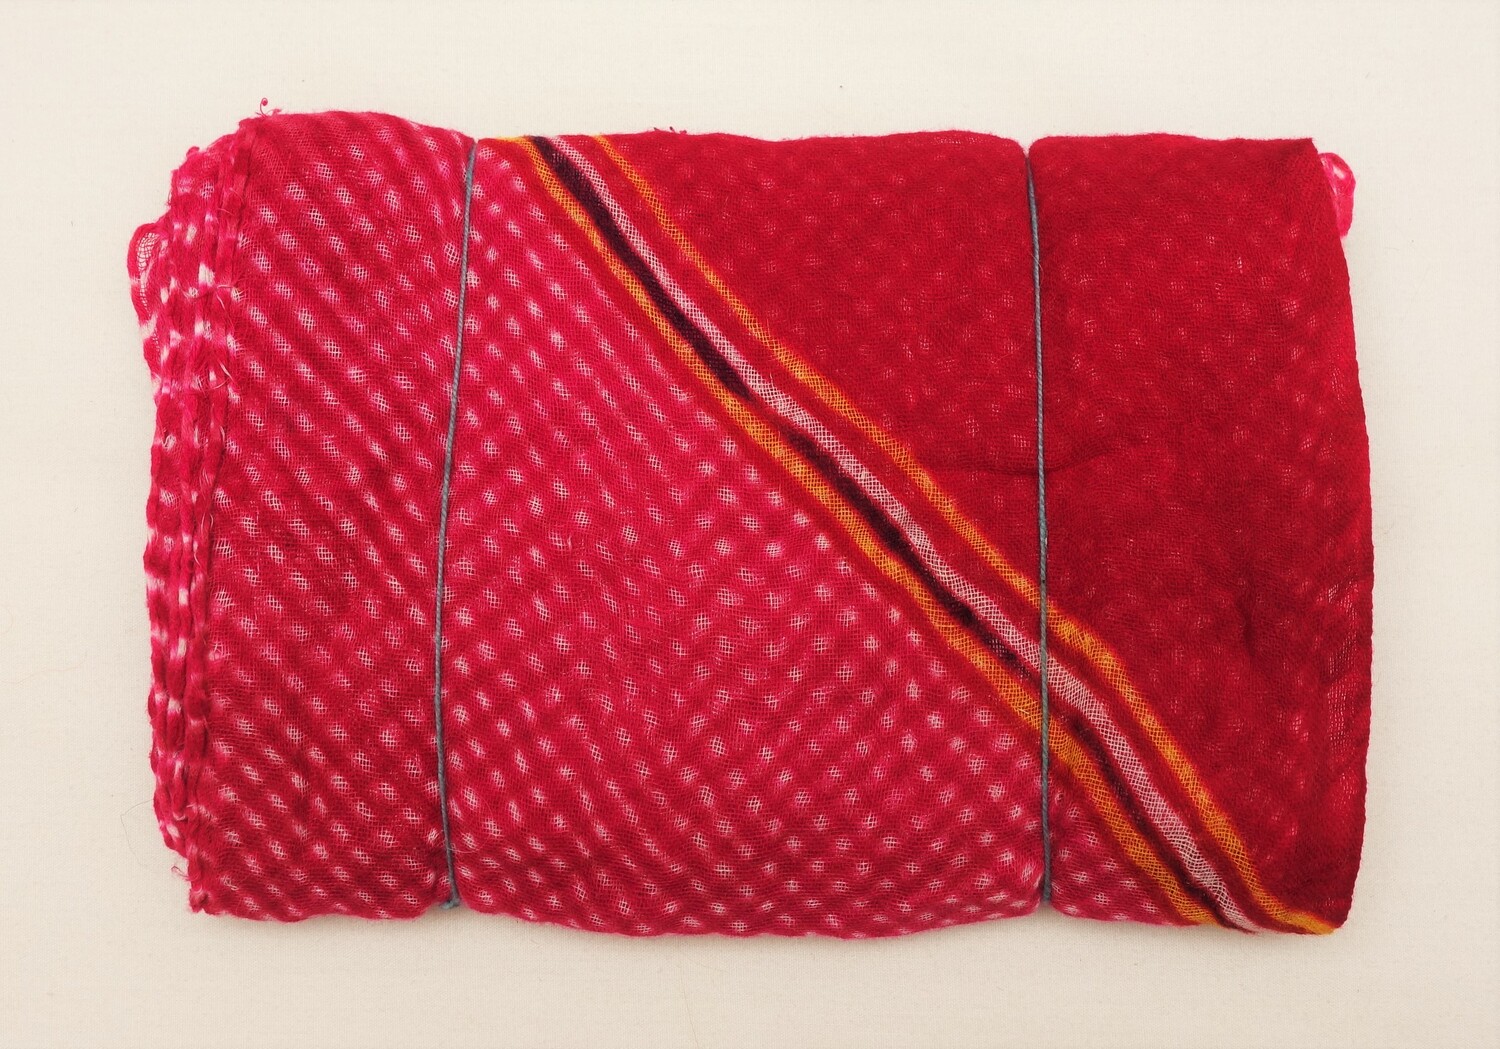 Turban cloth made from letheriya/mothra material, Jaipur, Rajasthan, India, 1980 (2022.2122).